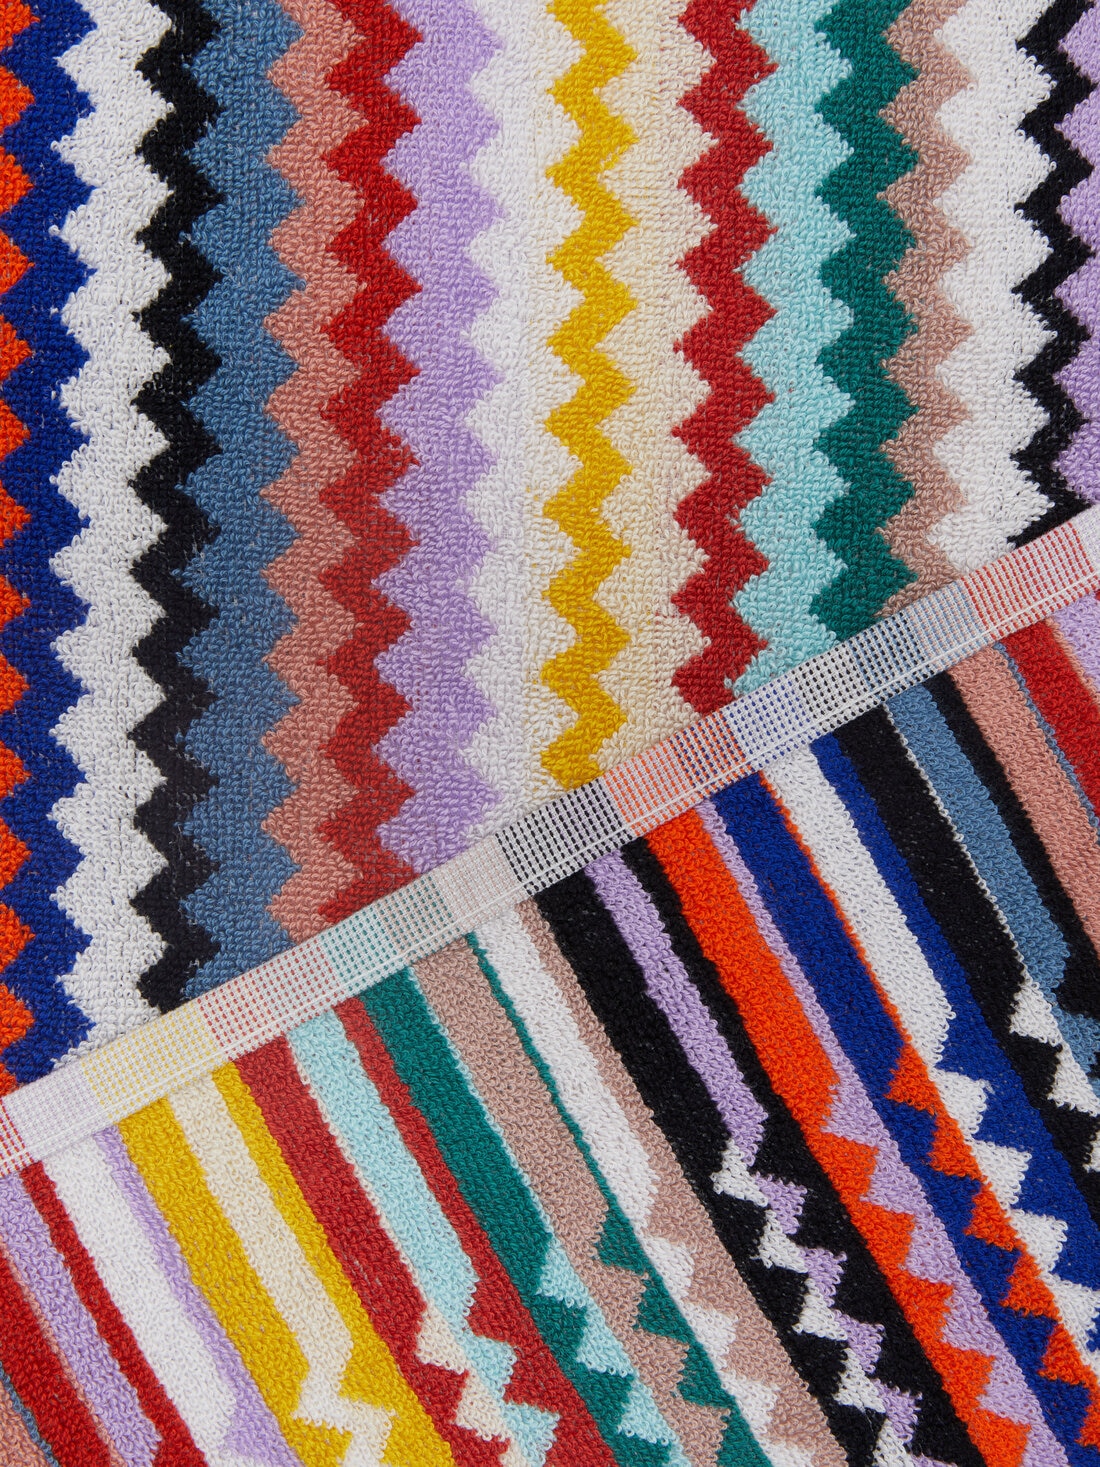 Riverbero 150x100 cm bath towel in zigzag cotton terry cloth , Multicoloured  - 8053147105307 - 2